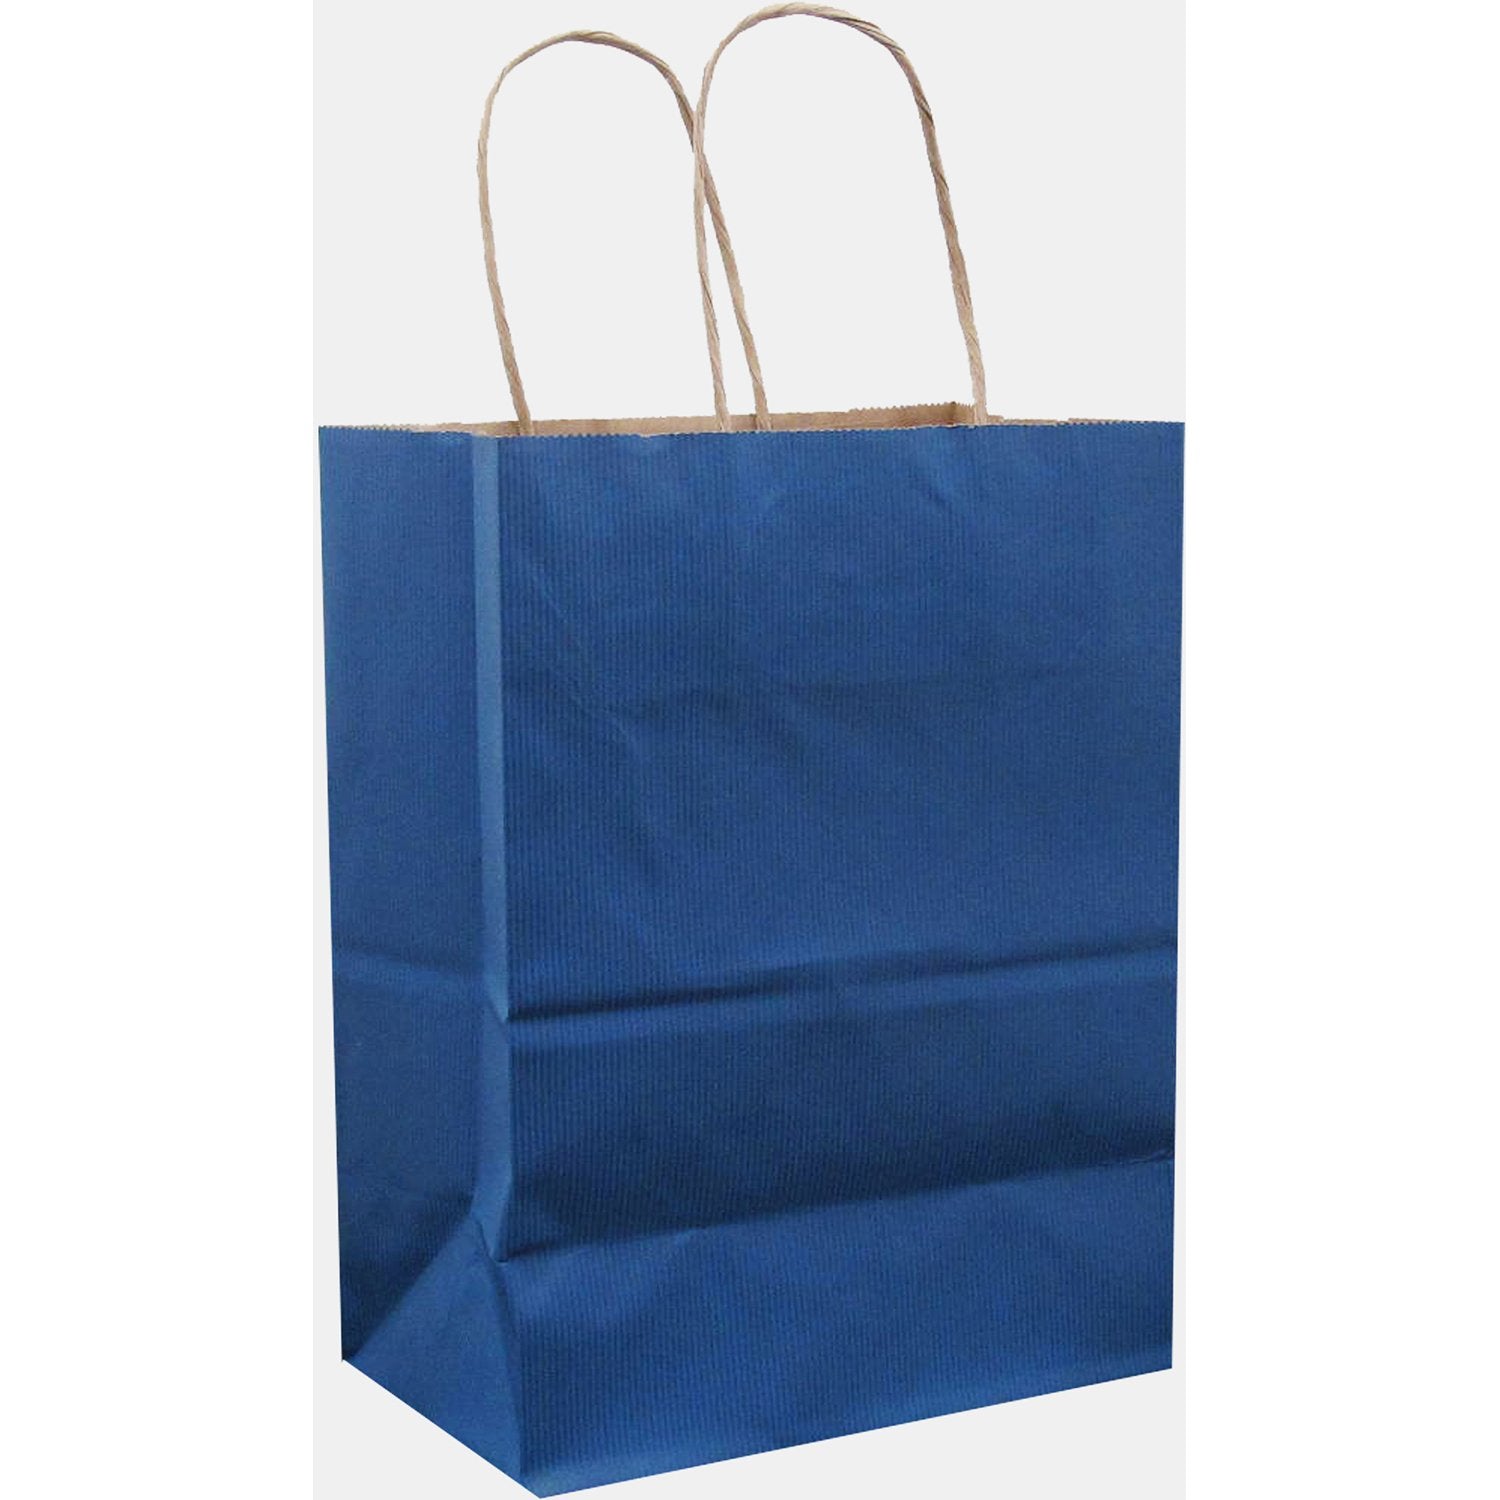 Jillson & Roberts Medium Kraft Bags, Royal